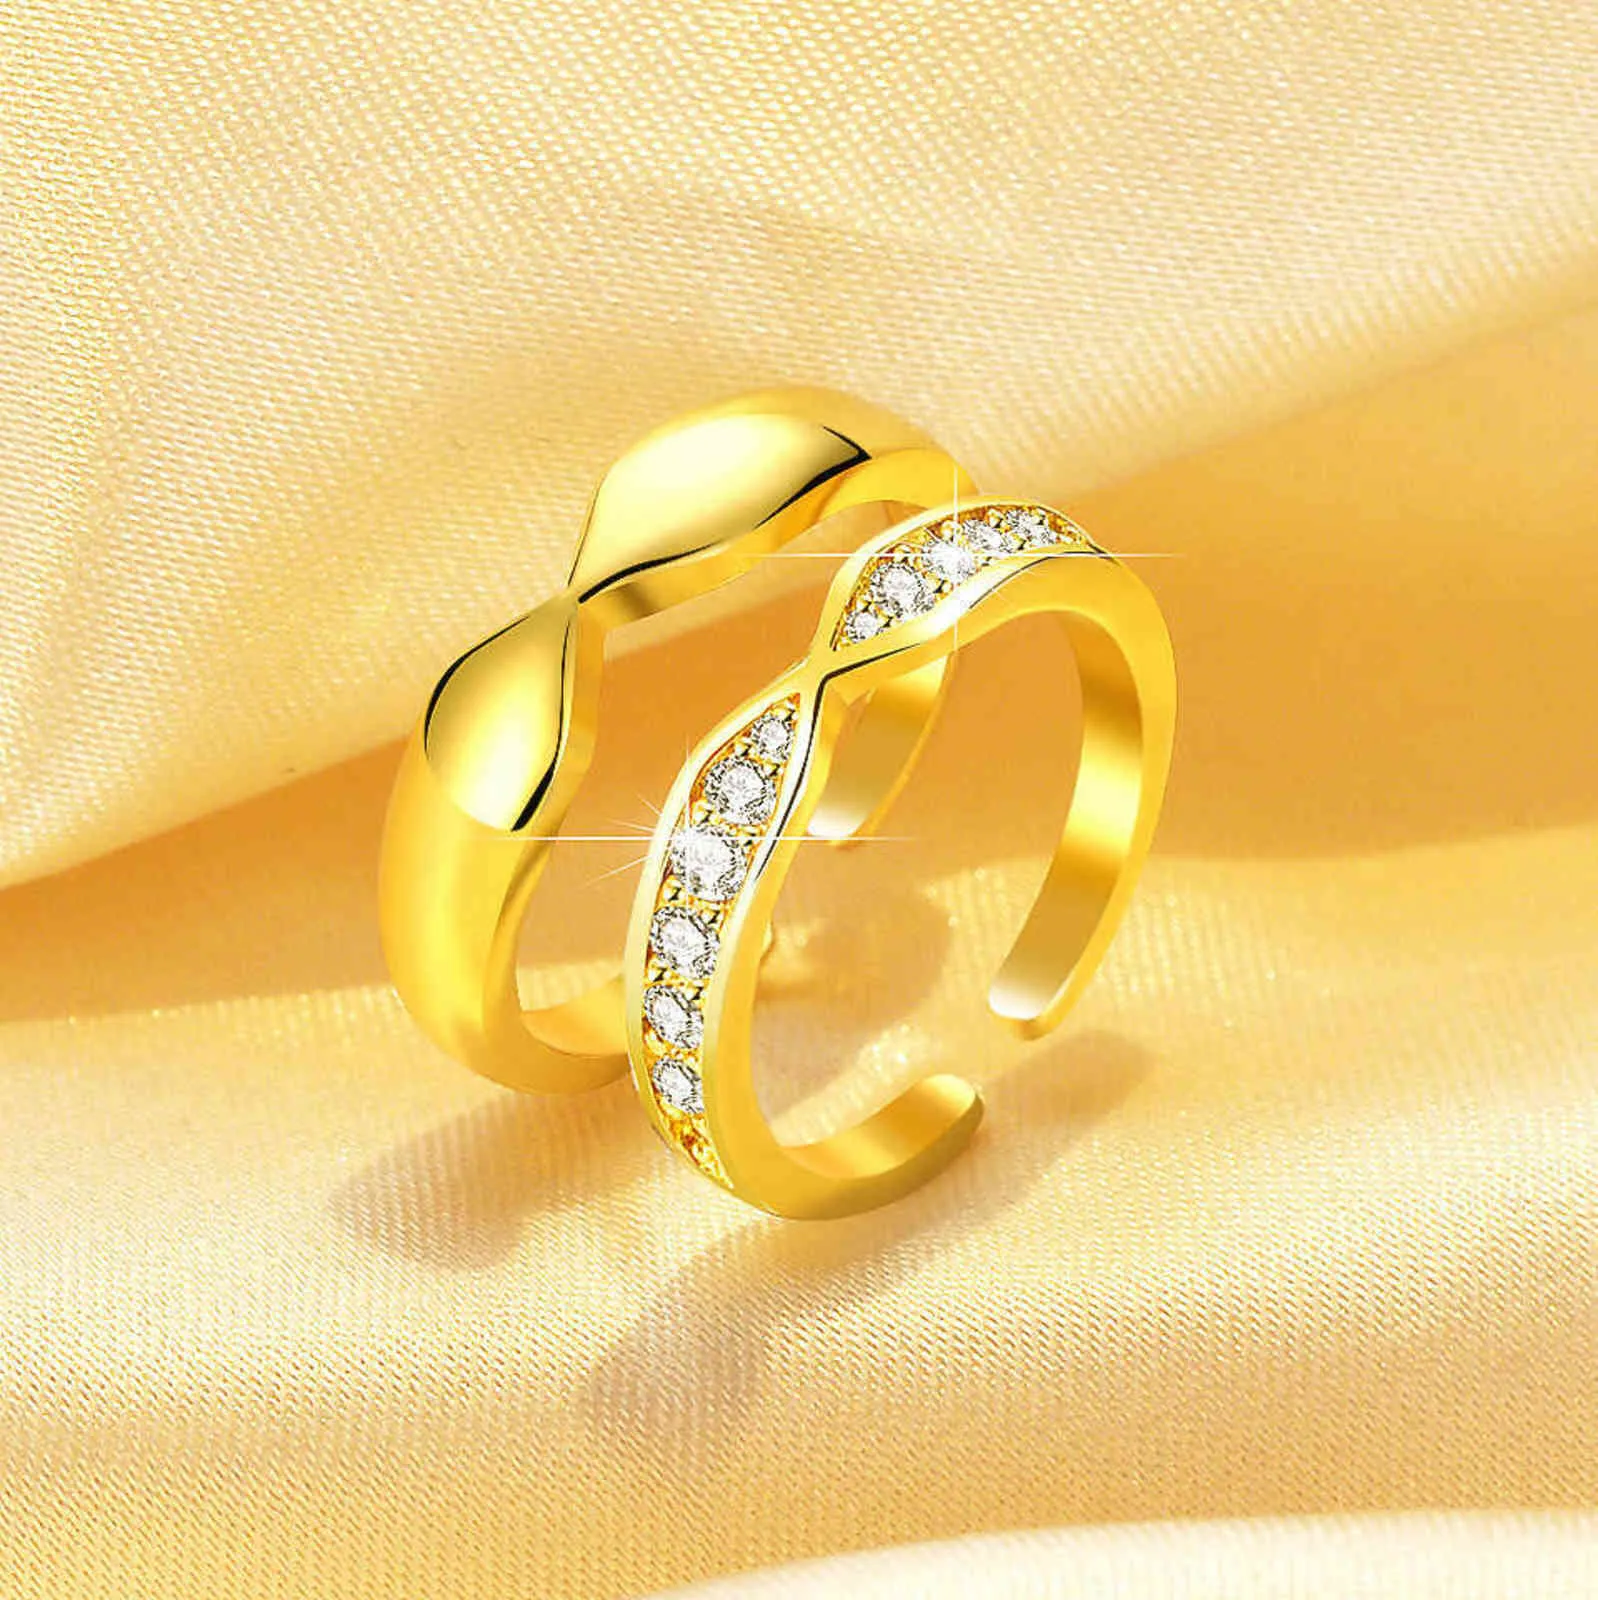 Casais Shang Chi Knuckl Anel Smart Jewelry Aço Inoxidável Anéis Jóias G1125